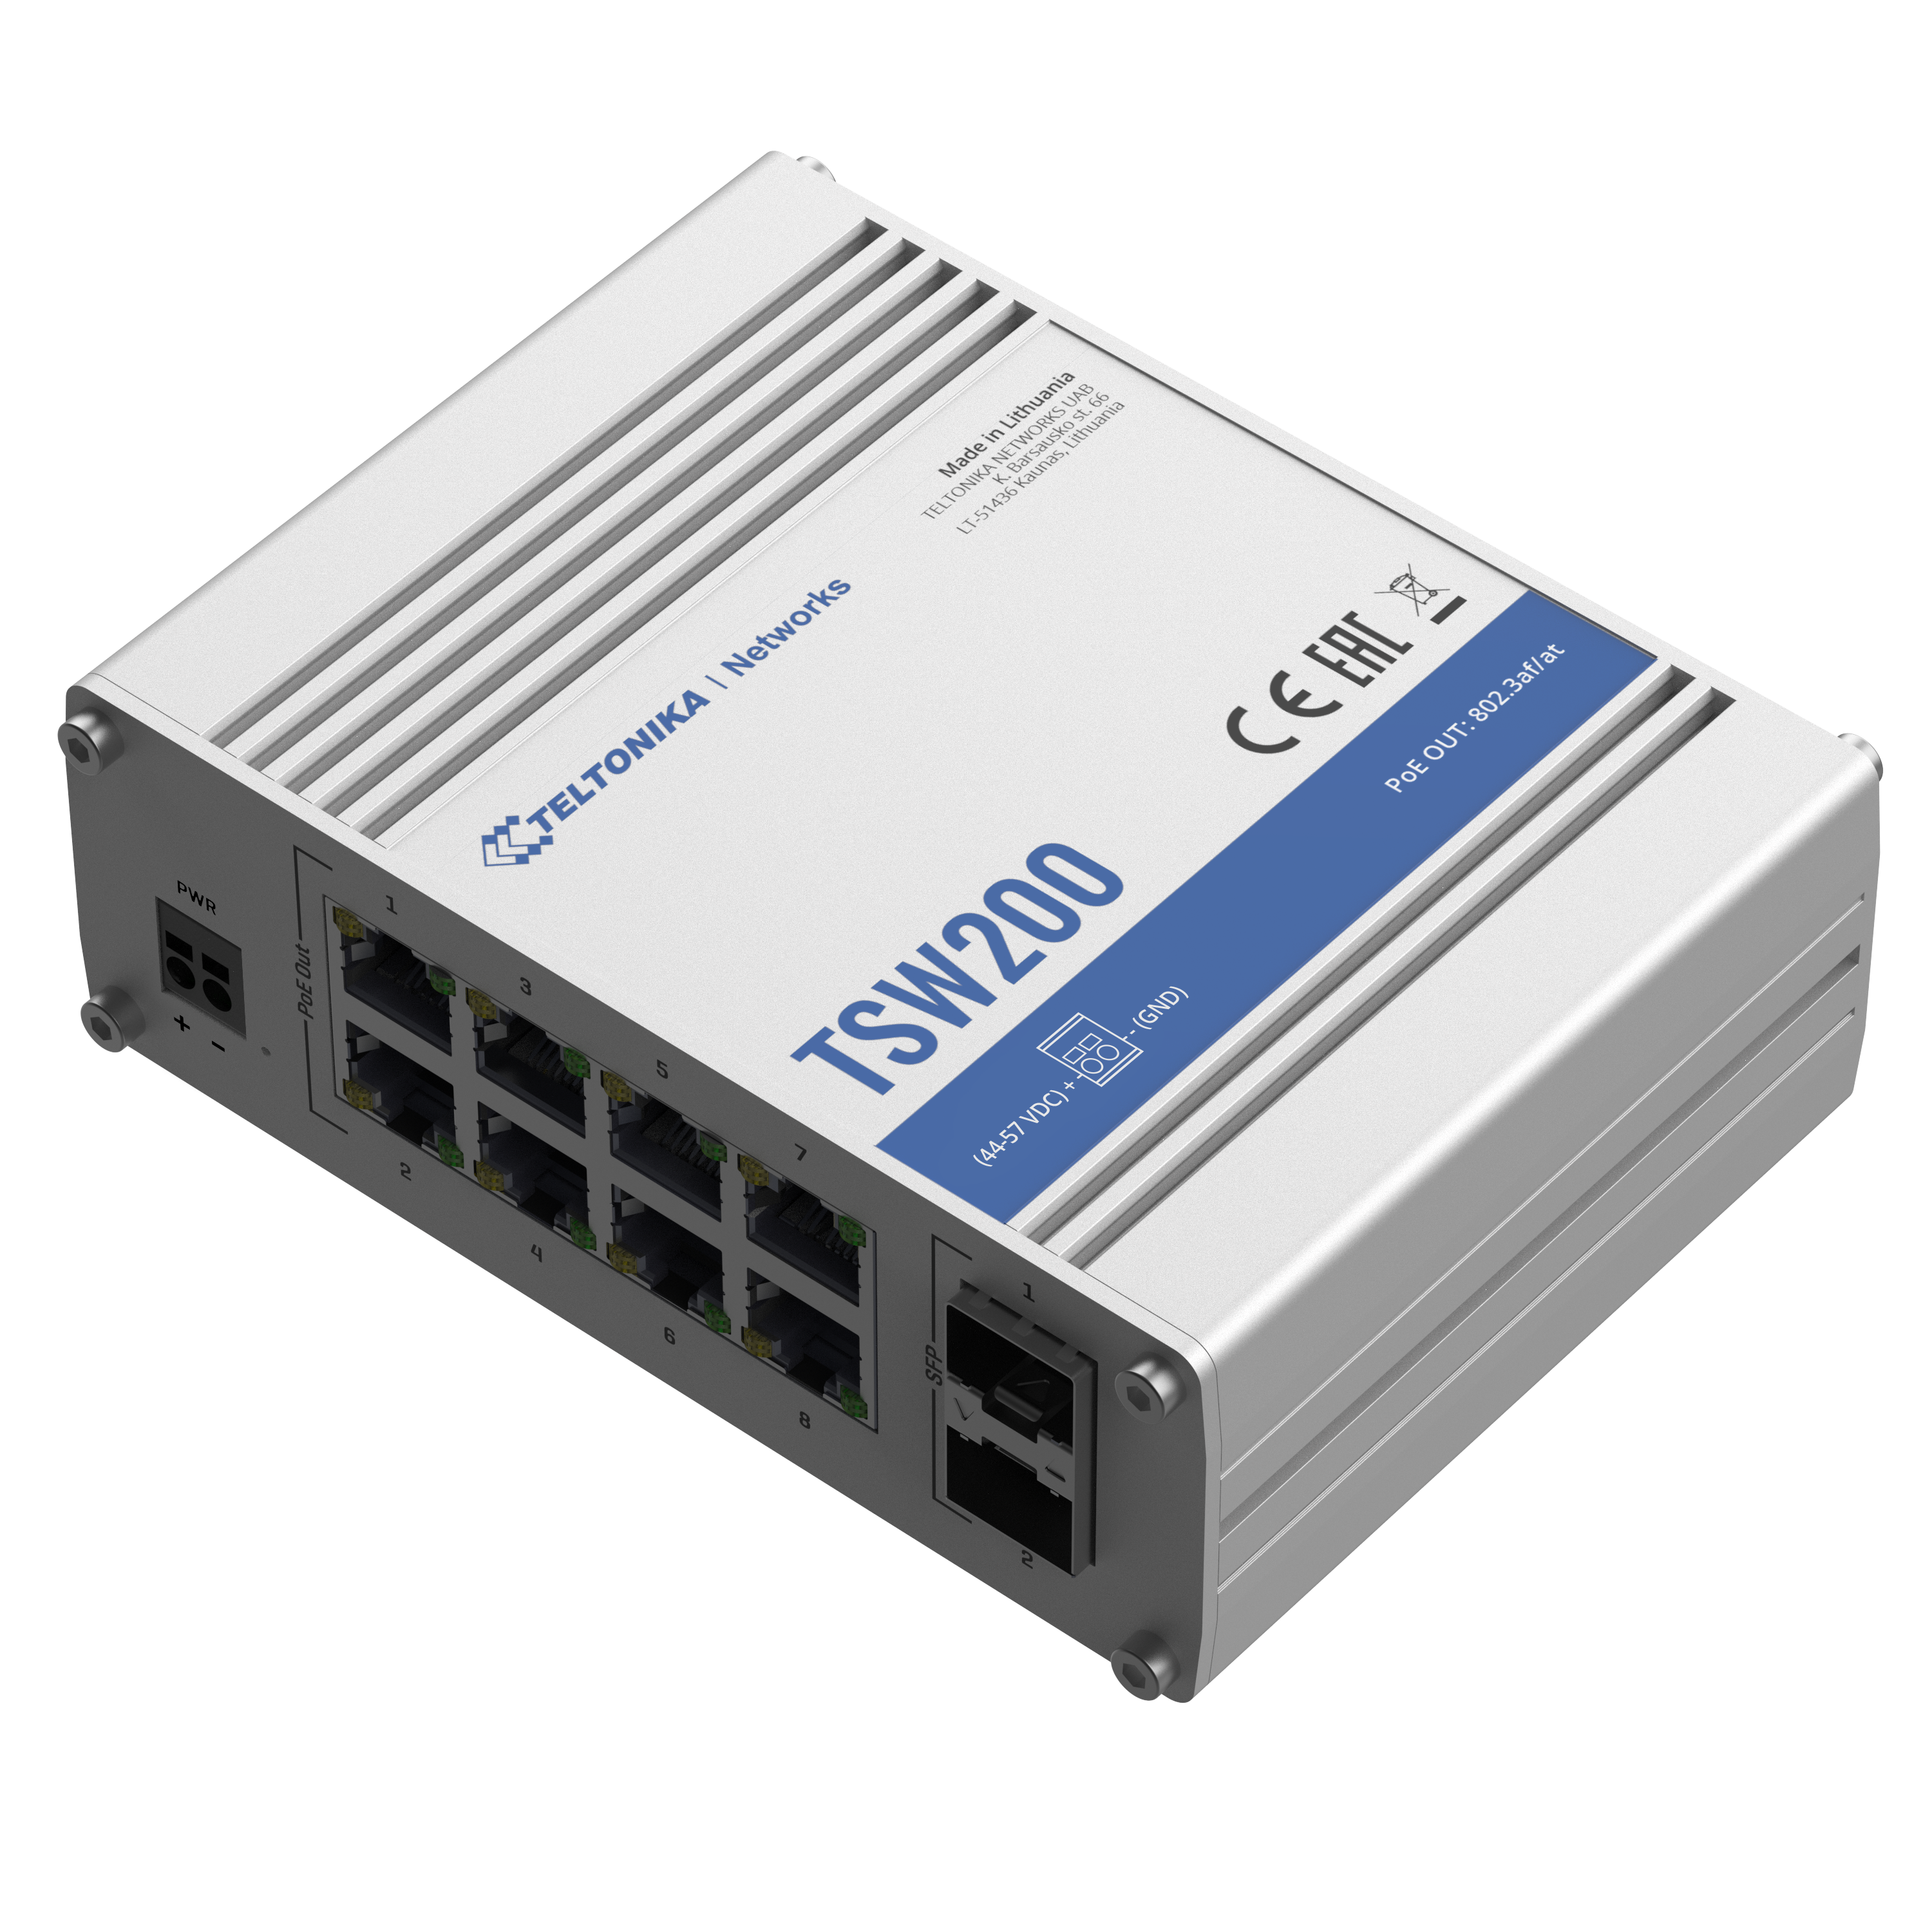 TSW200 - Teltonika Switches. 8 x Gigabit Ethernet ports